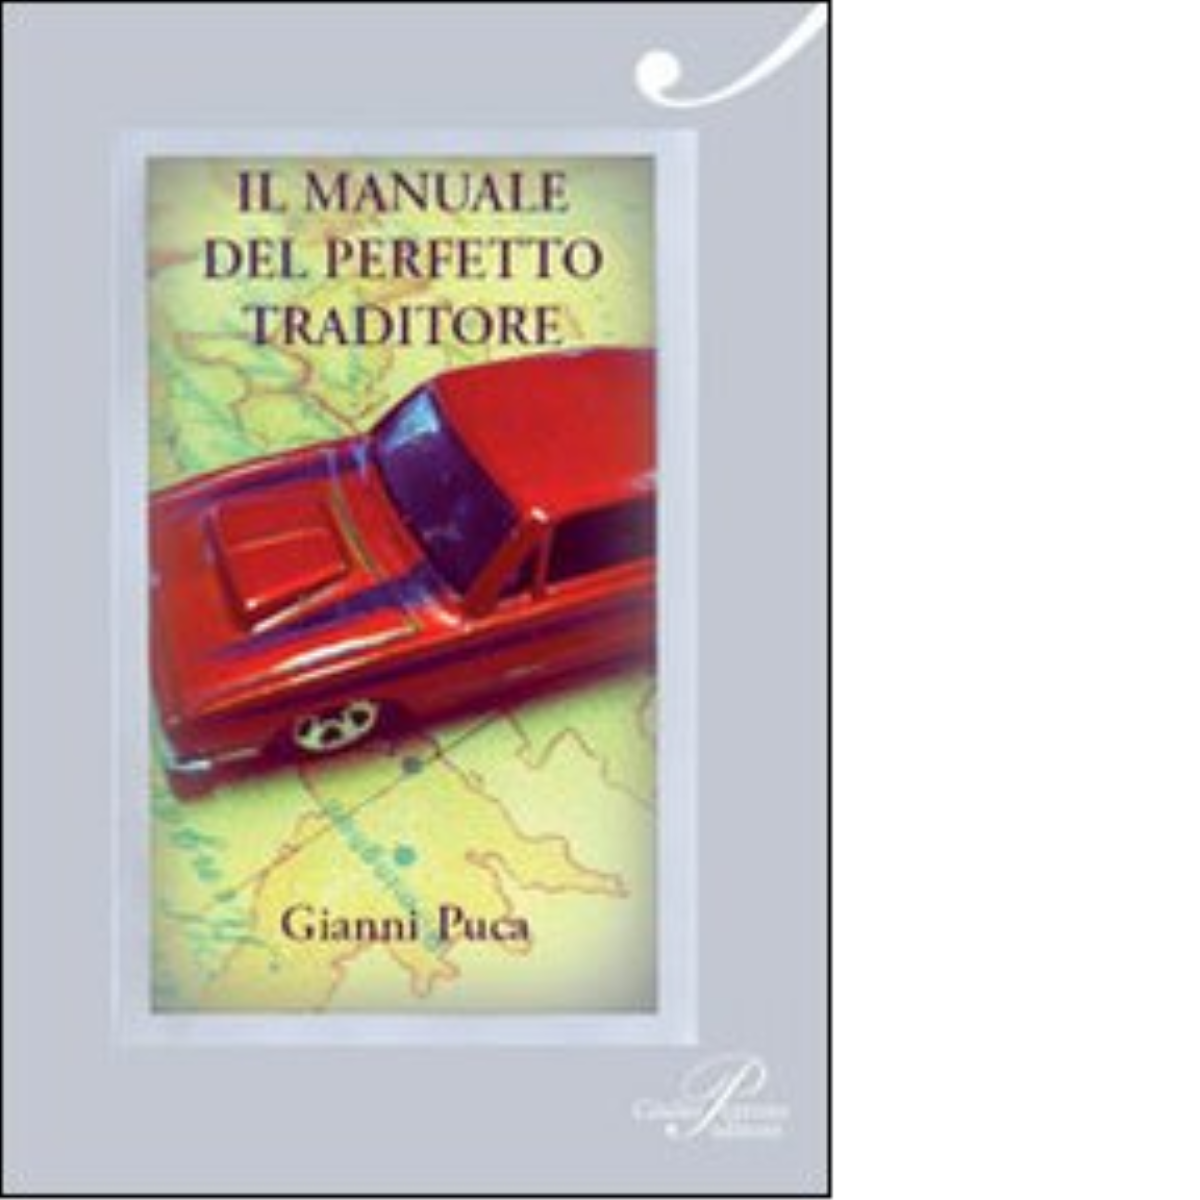 Il manuale del perfetto traditore - Gianni Puca - Perrone, 2011